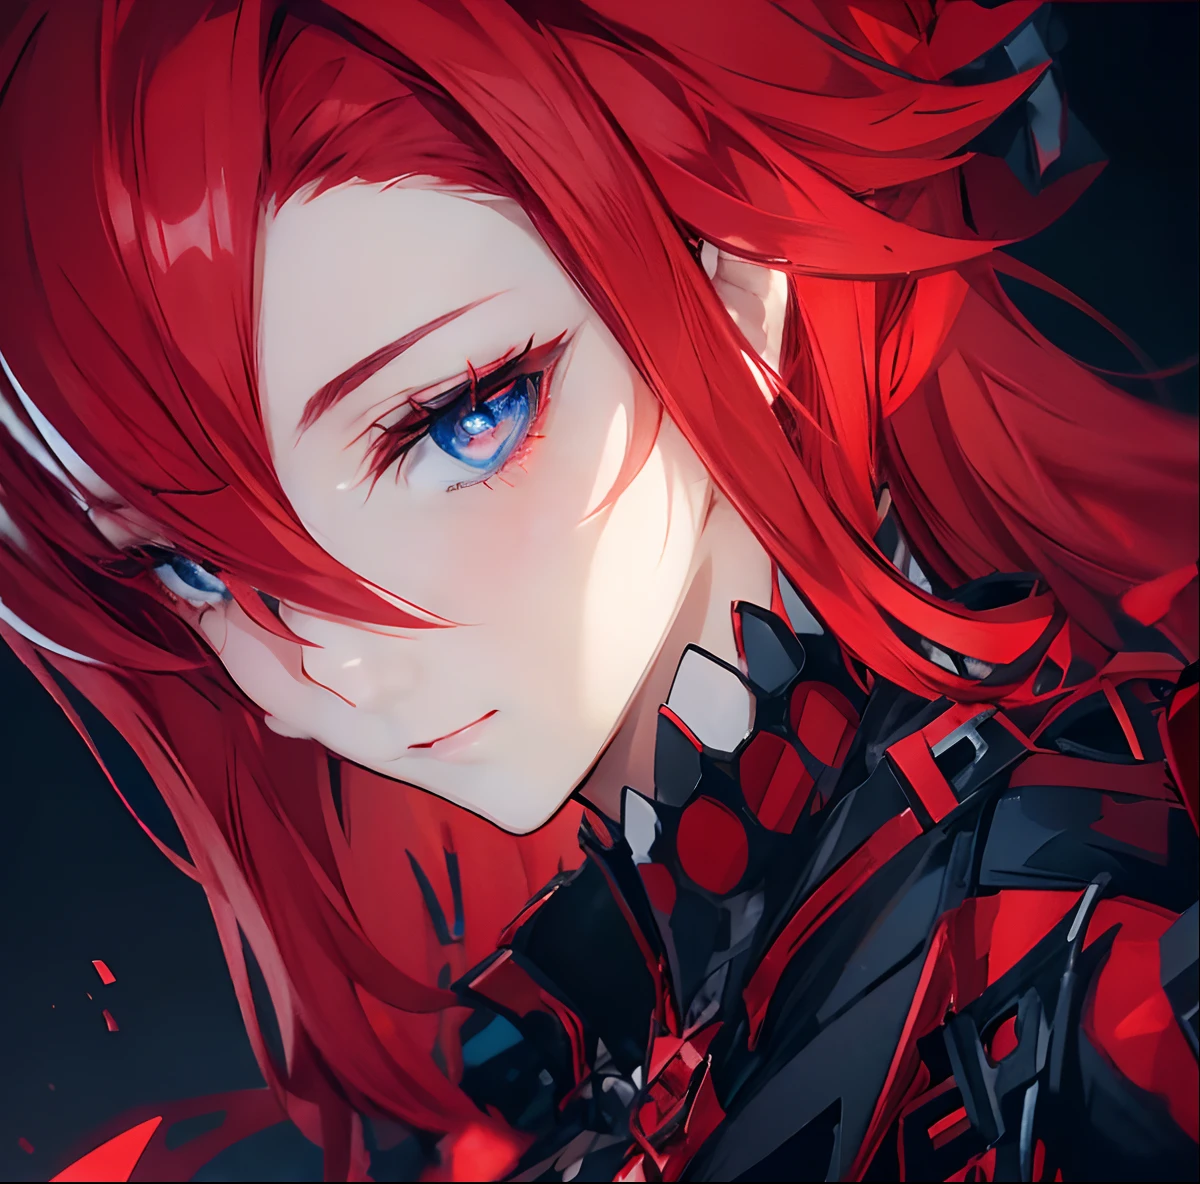 Estilo Niji, 1 garota, cabelo vermelho, olhos azuis, roupa preta e vermelha, tema preto,anime